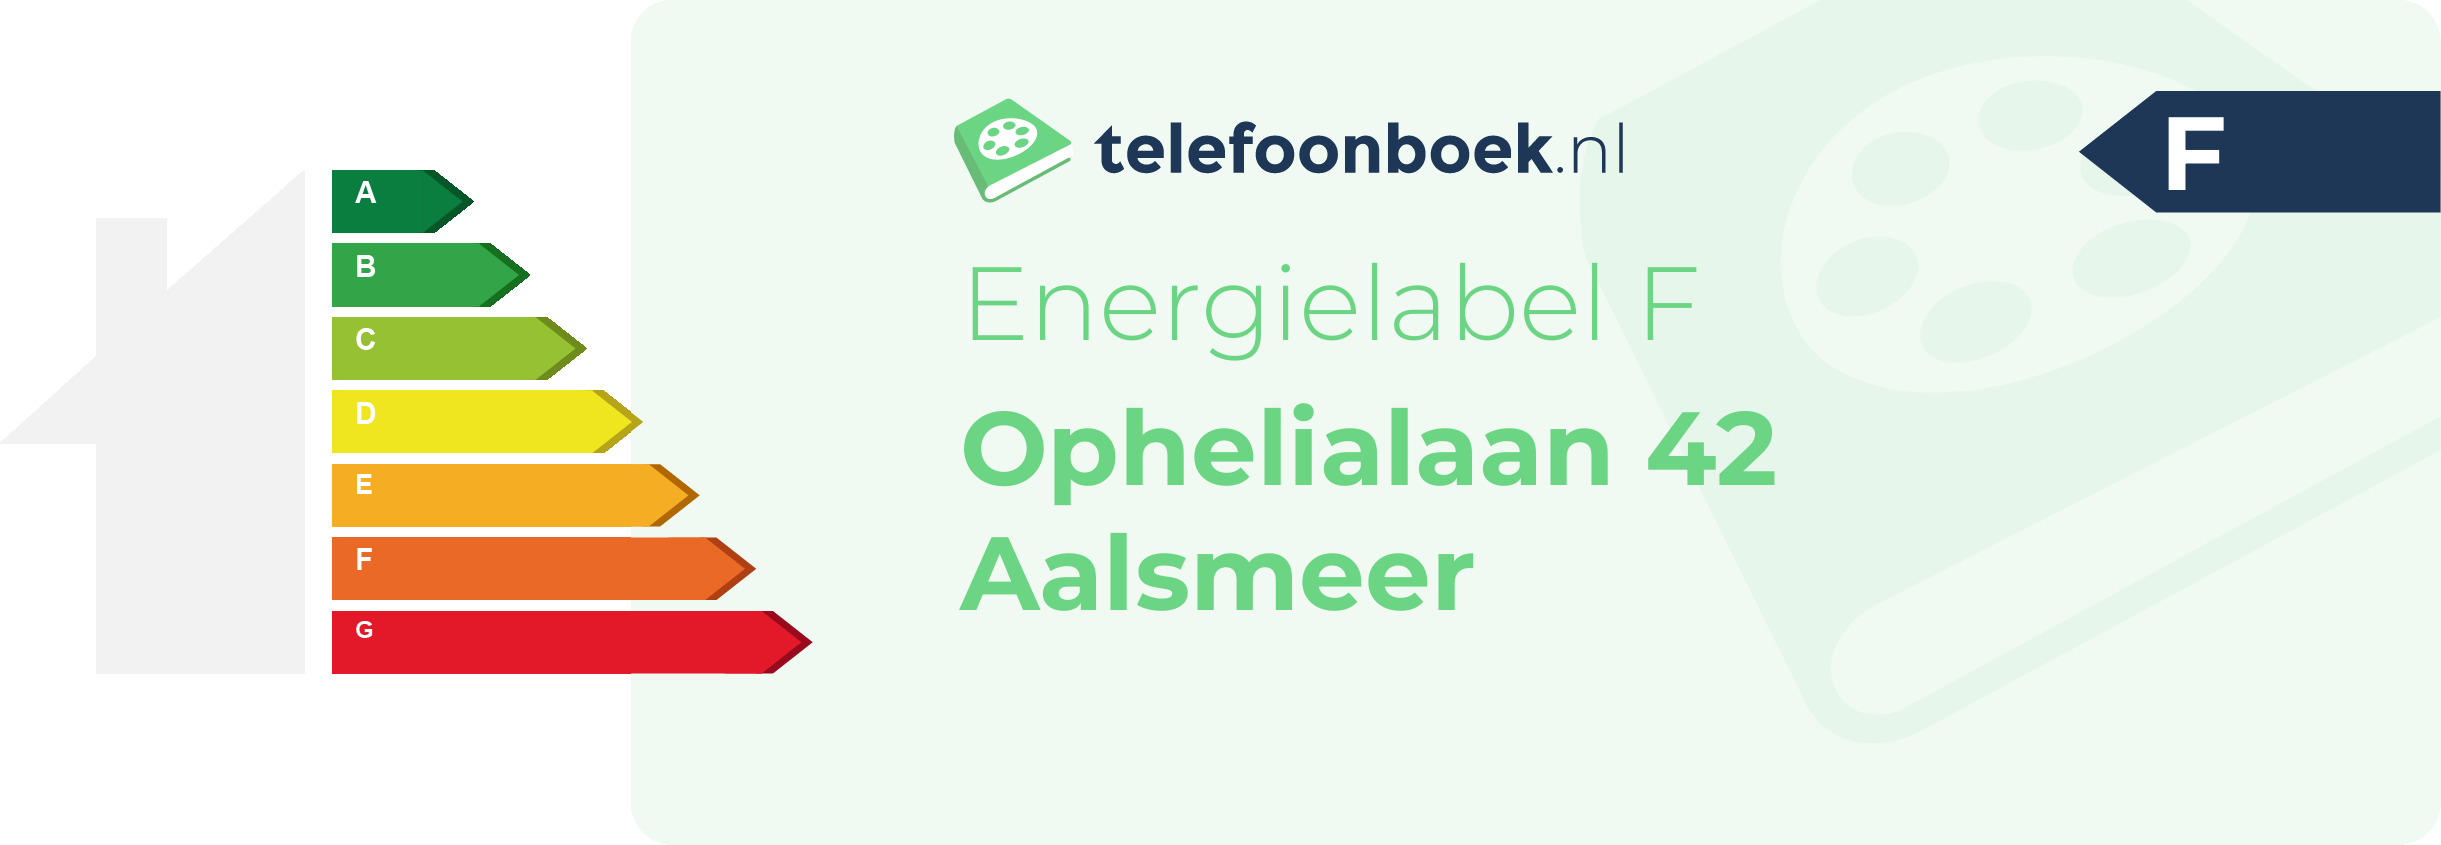 Energielabel Ophelialaan 42 Aalsmeer